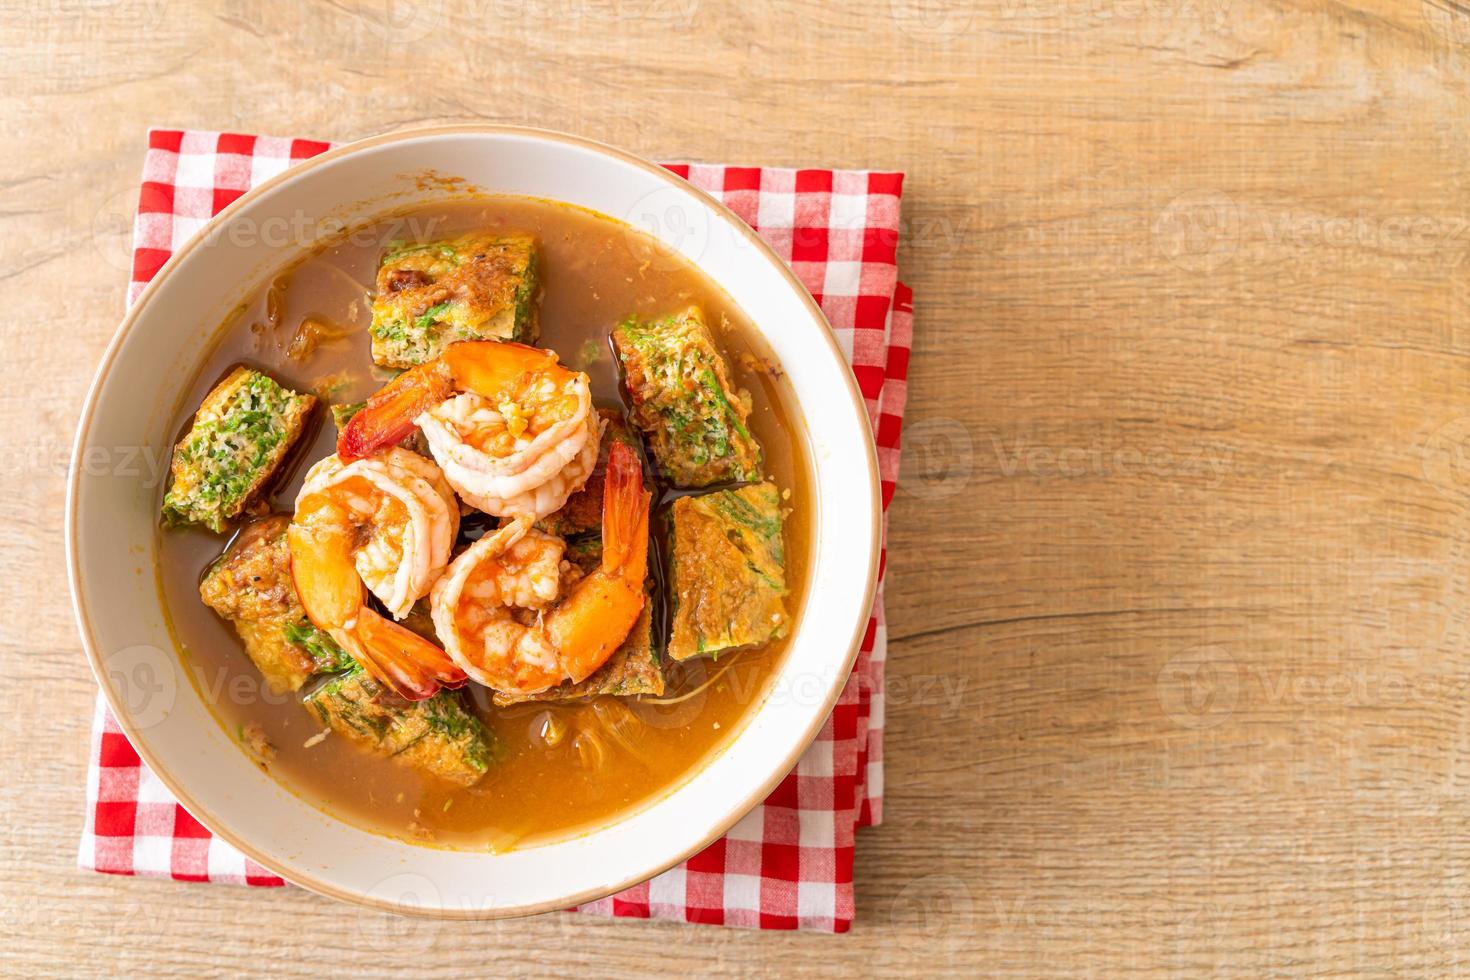 saure Suppe aus Tamarindenpaste mit Garnelen und Gemüseomelett foto